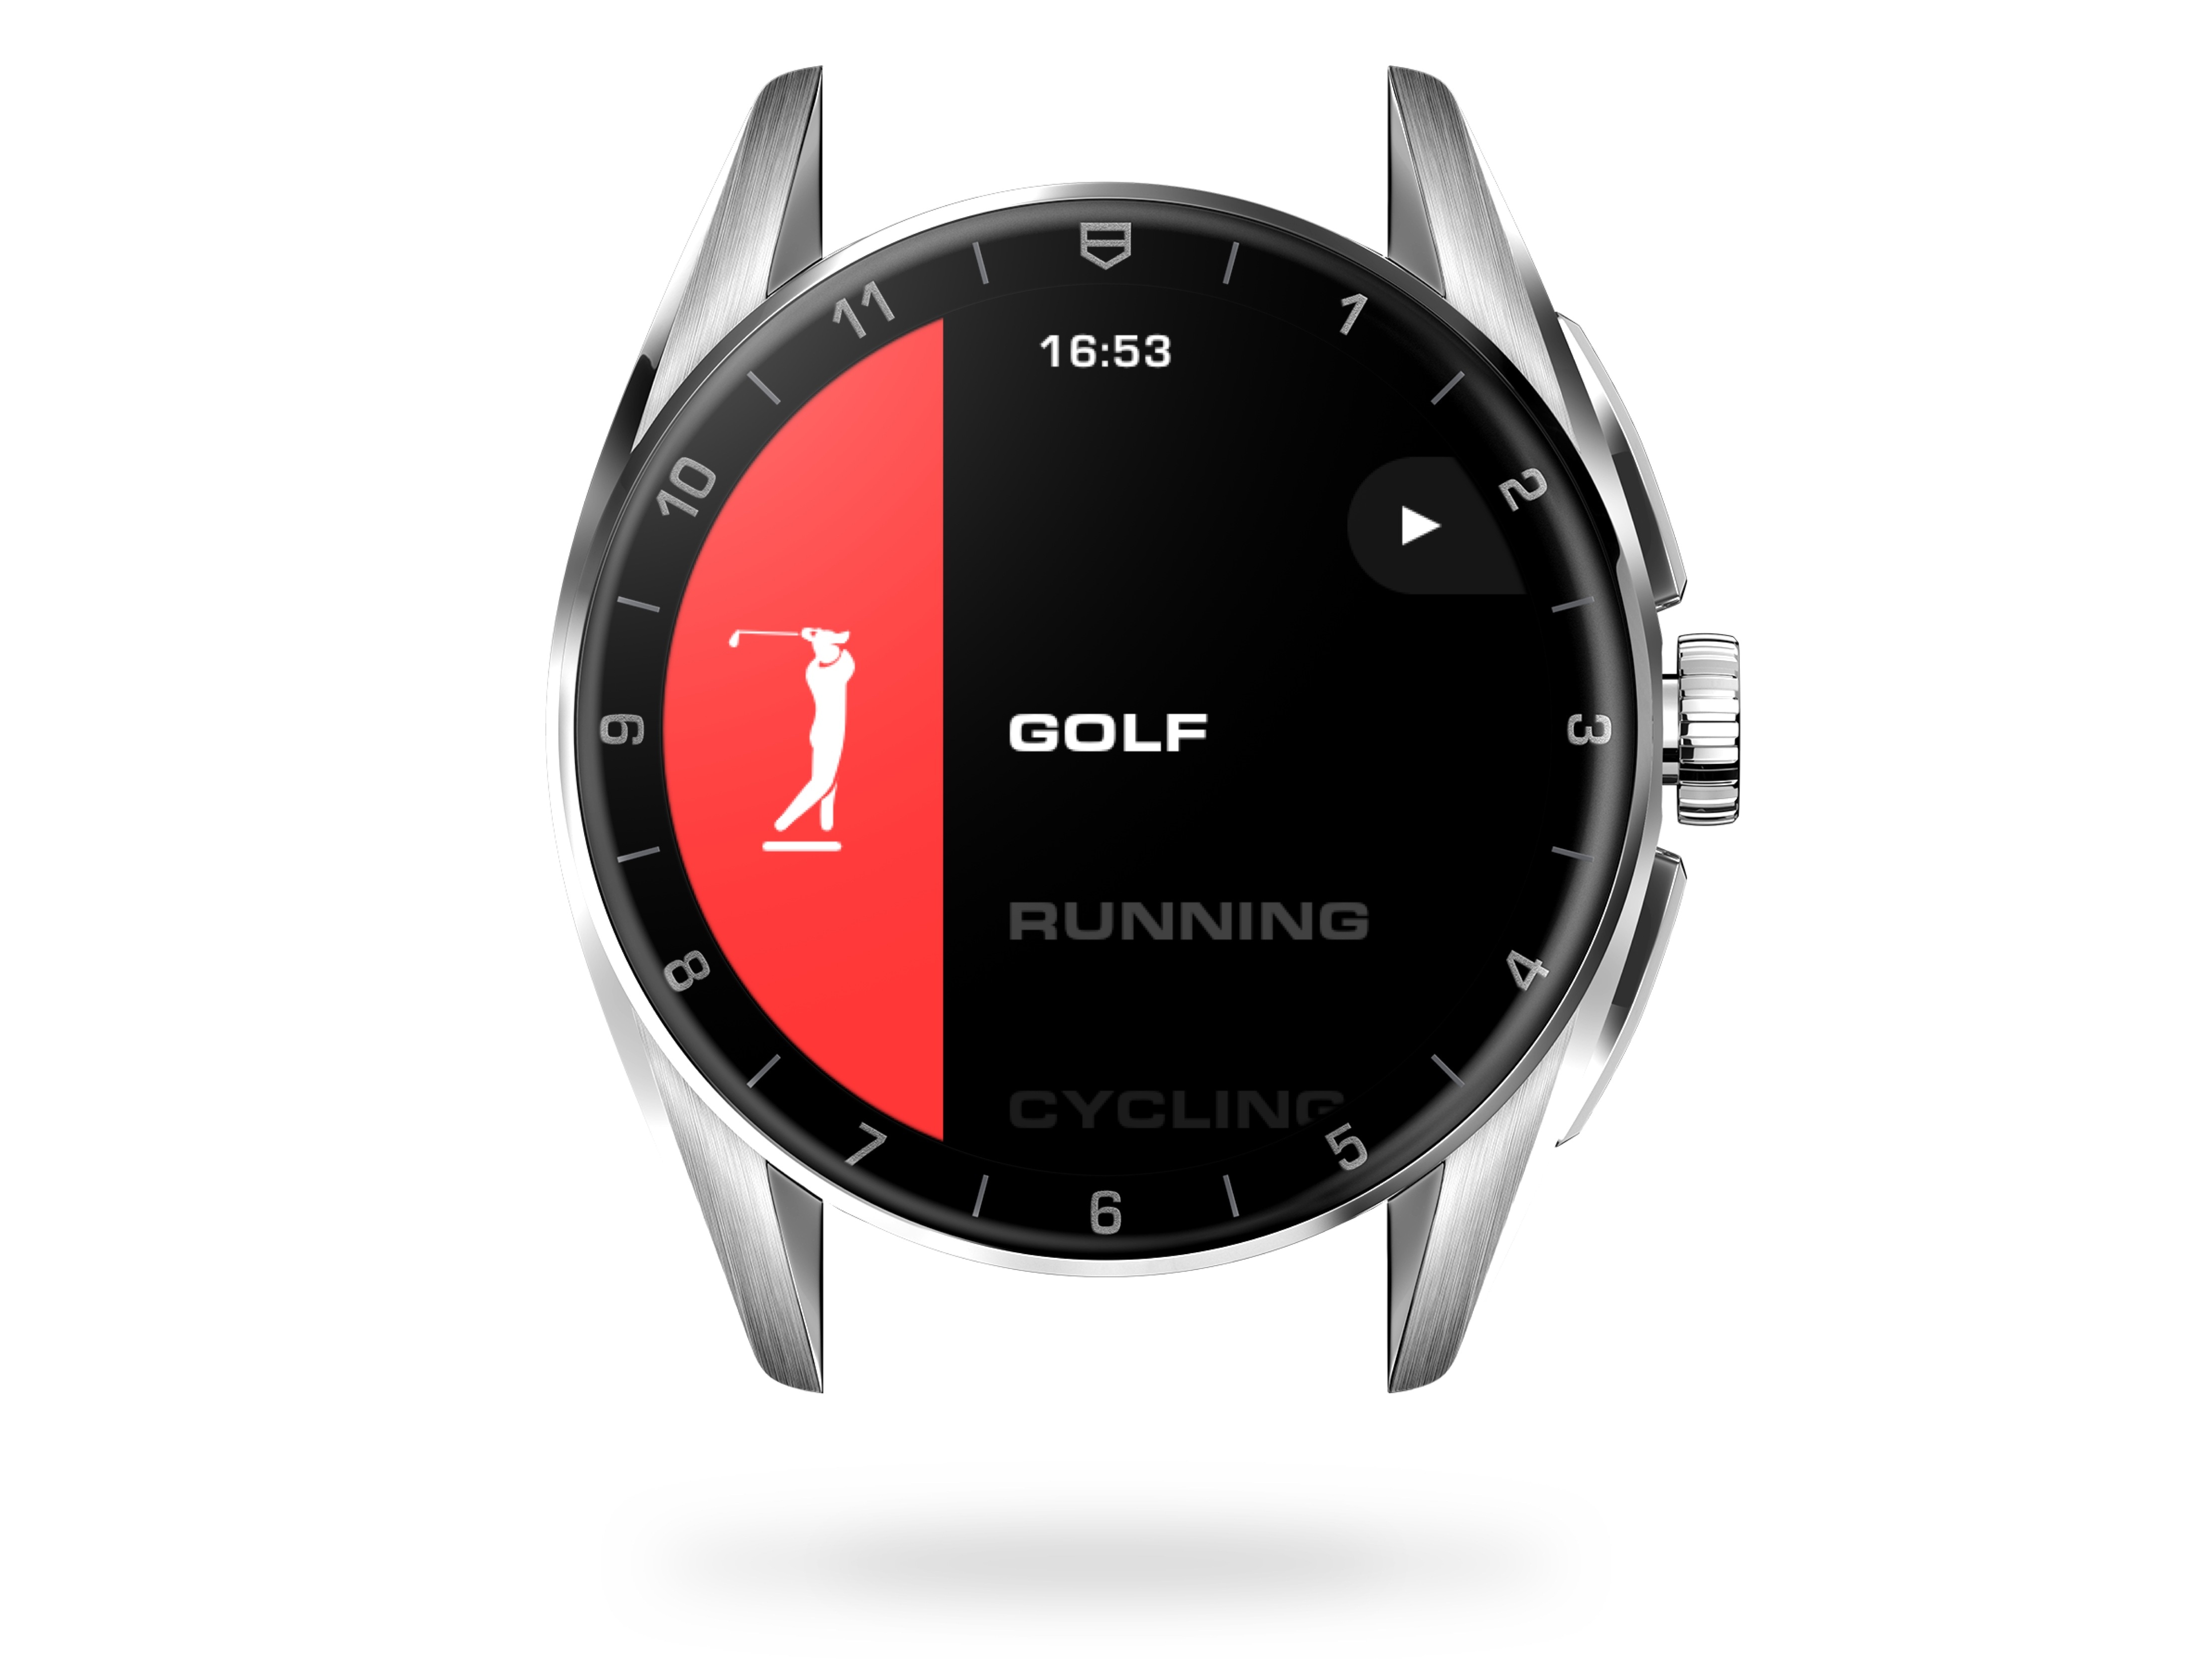 Faça login no aplicativo TAG Heuer Golf